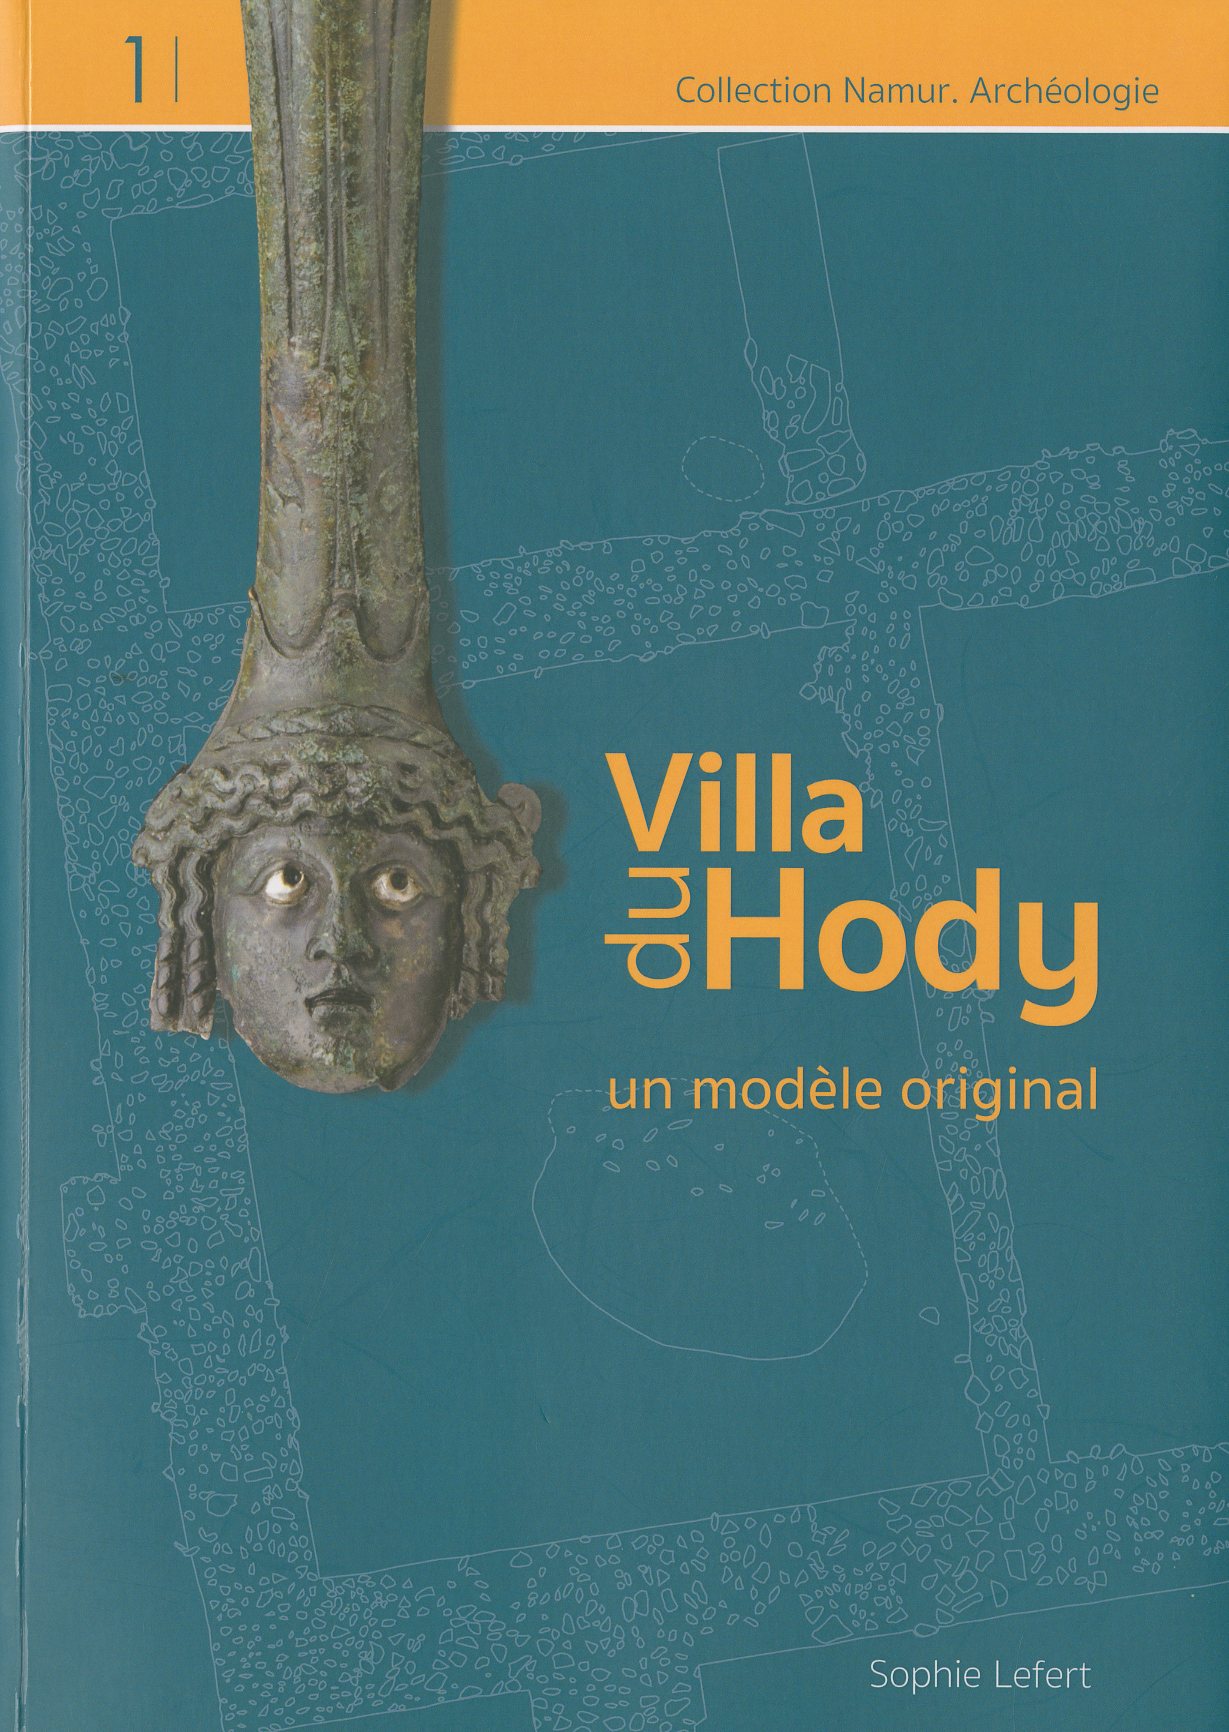 La villa gallo-romaine du Hody, à Hamois, un modèle original, 2018, 207 p.